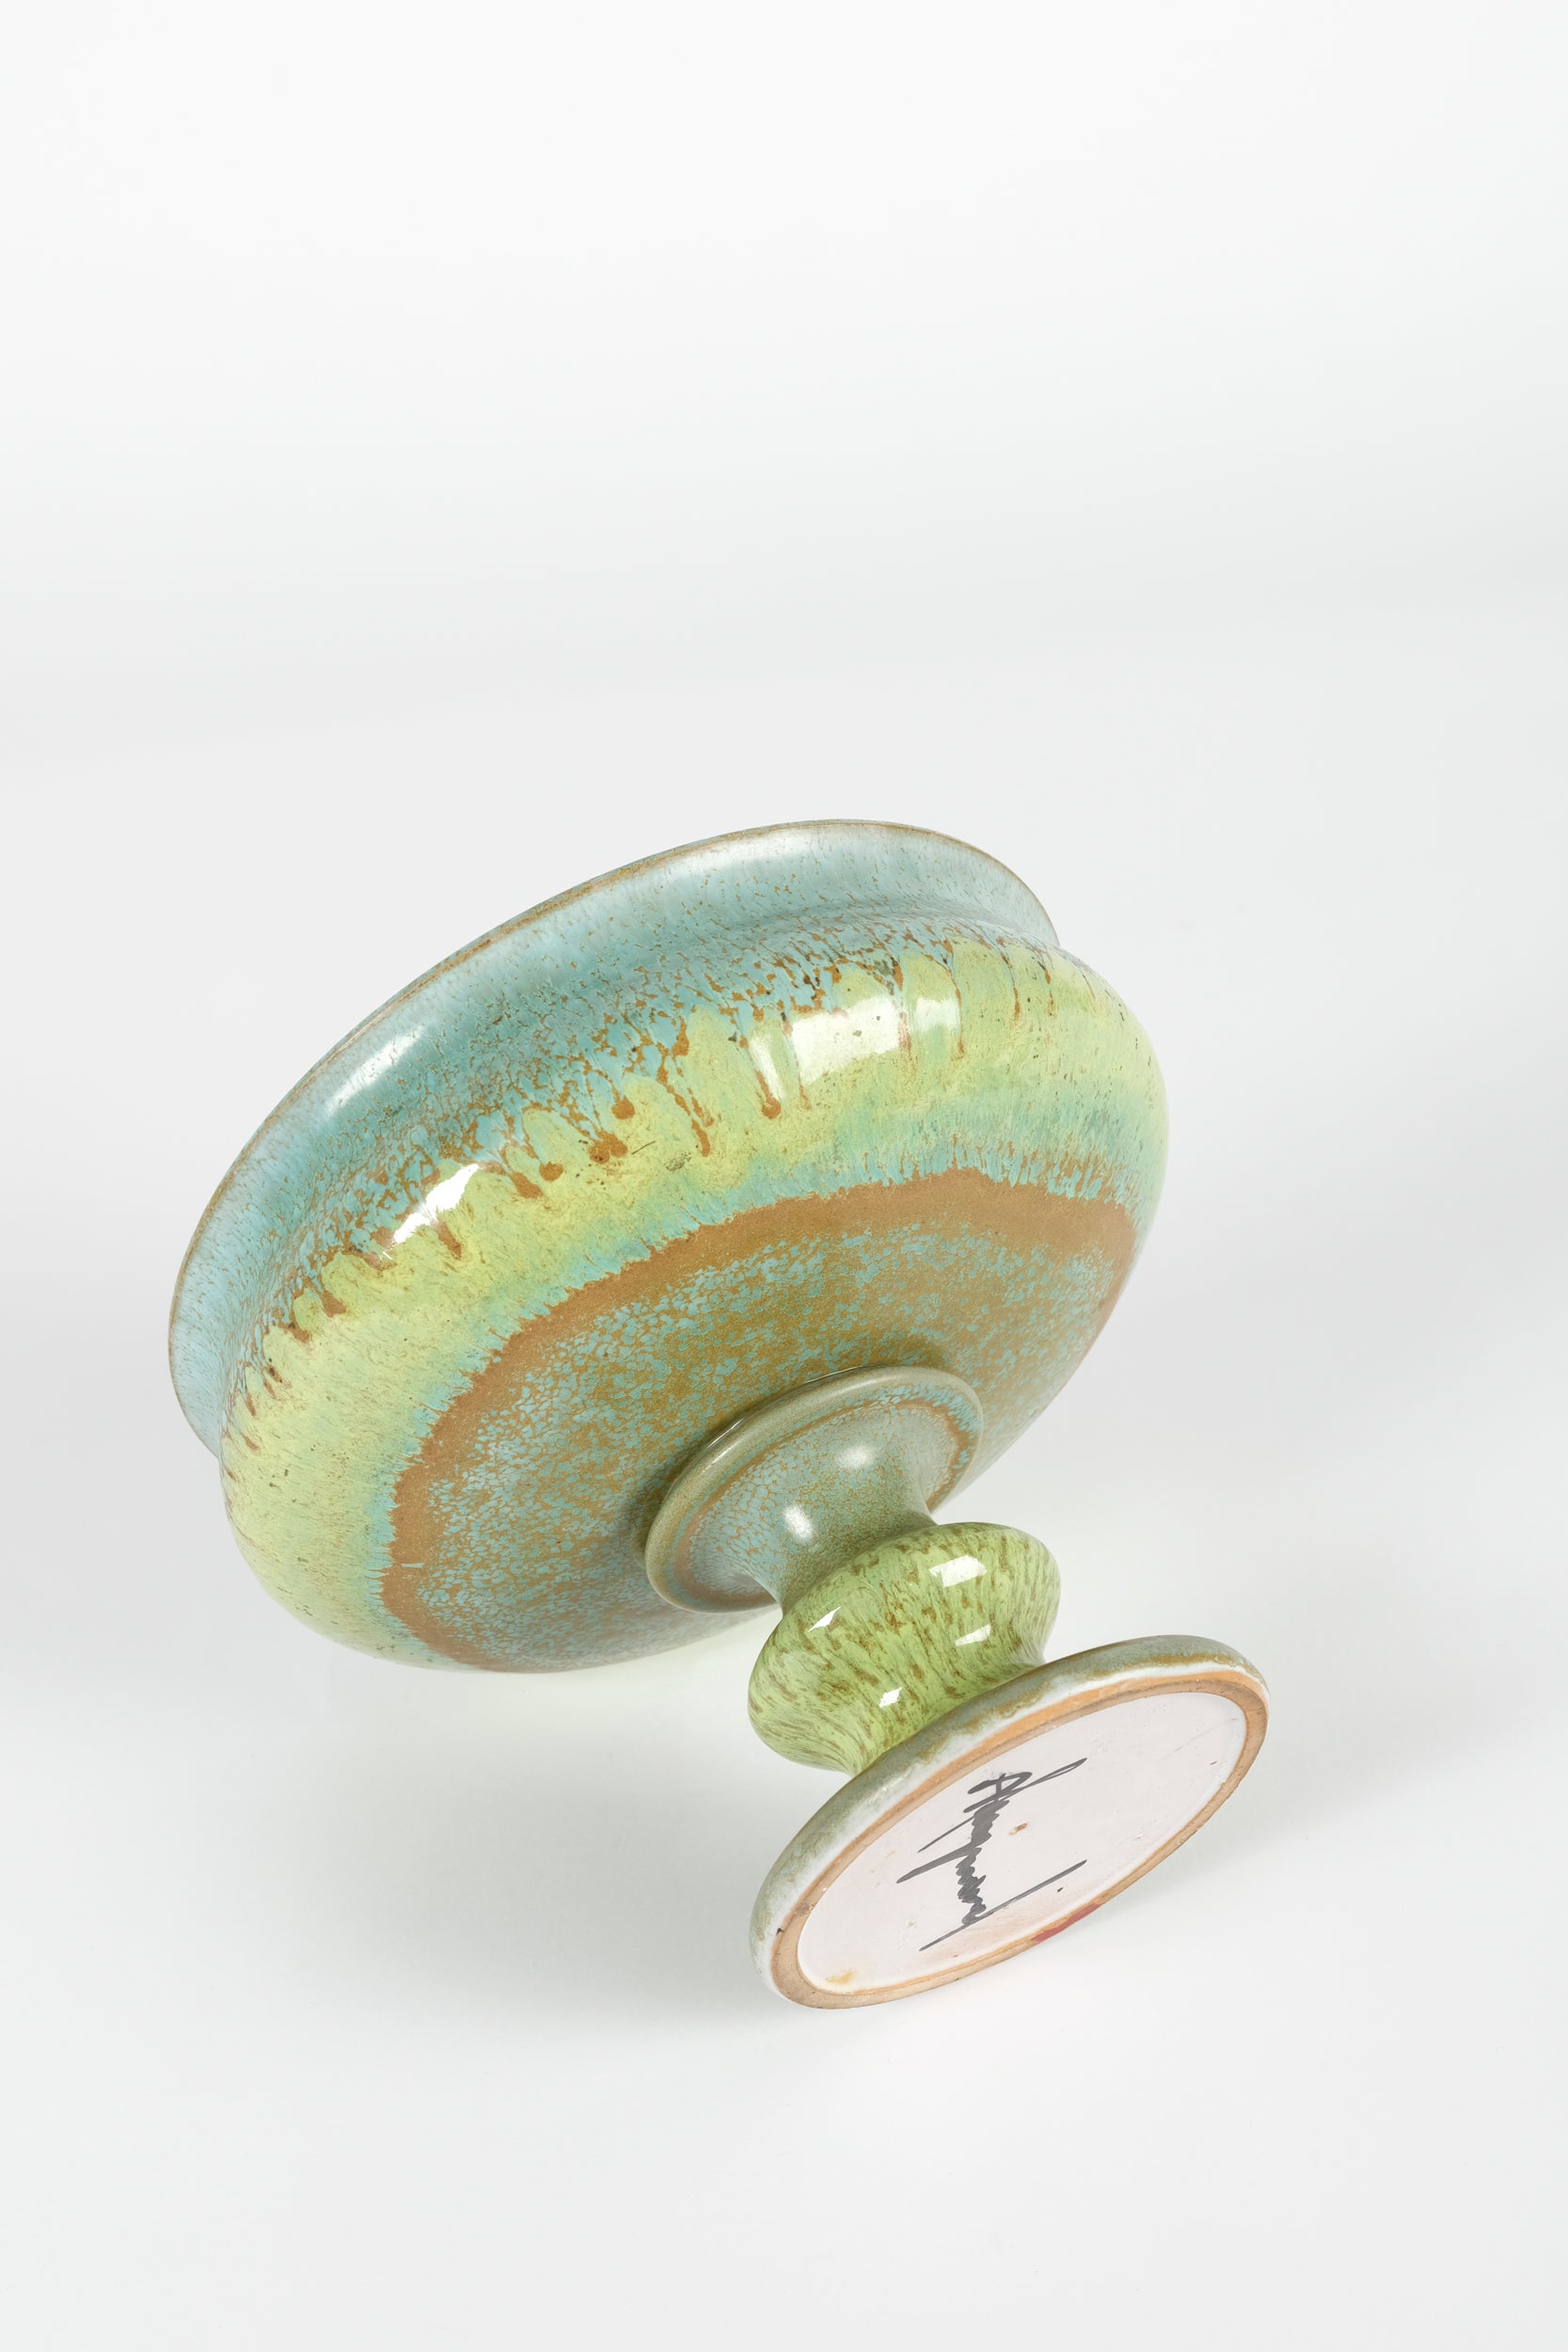 A Freymond Keramik Schale mit Pedestalfuss 70er